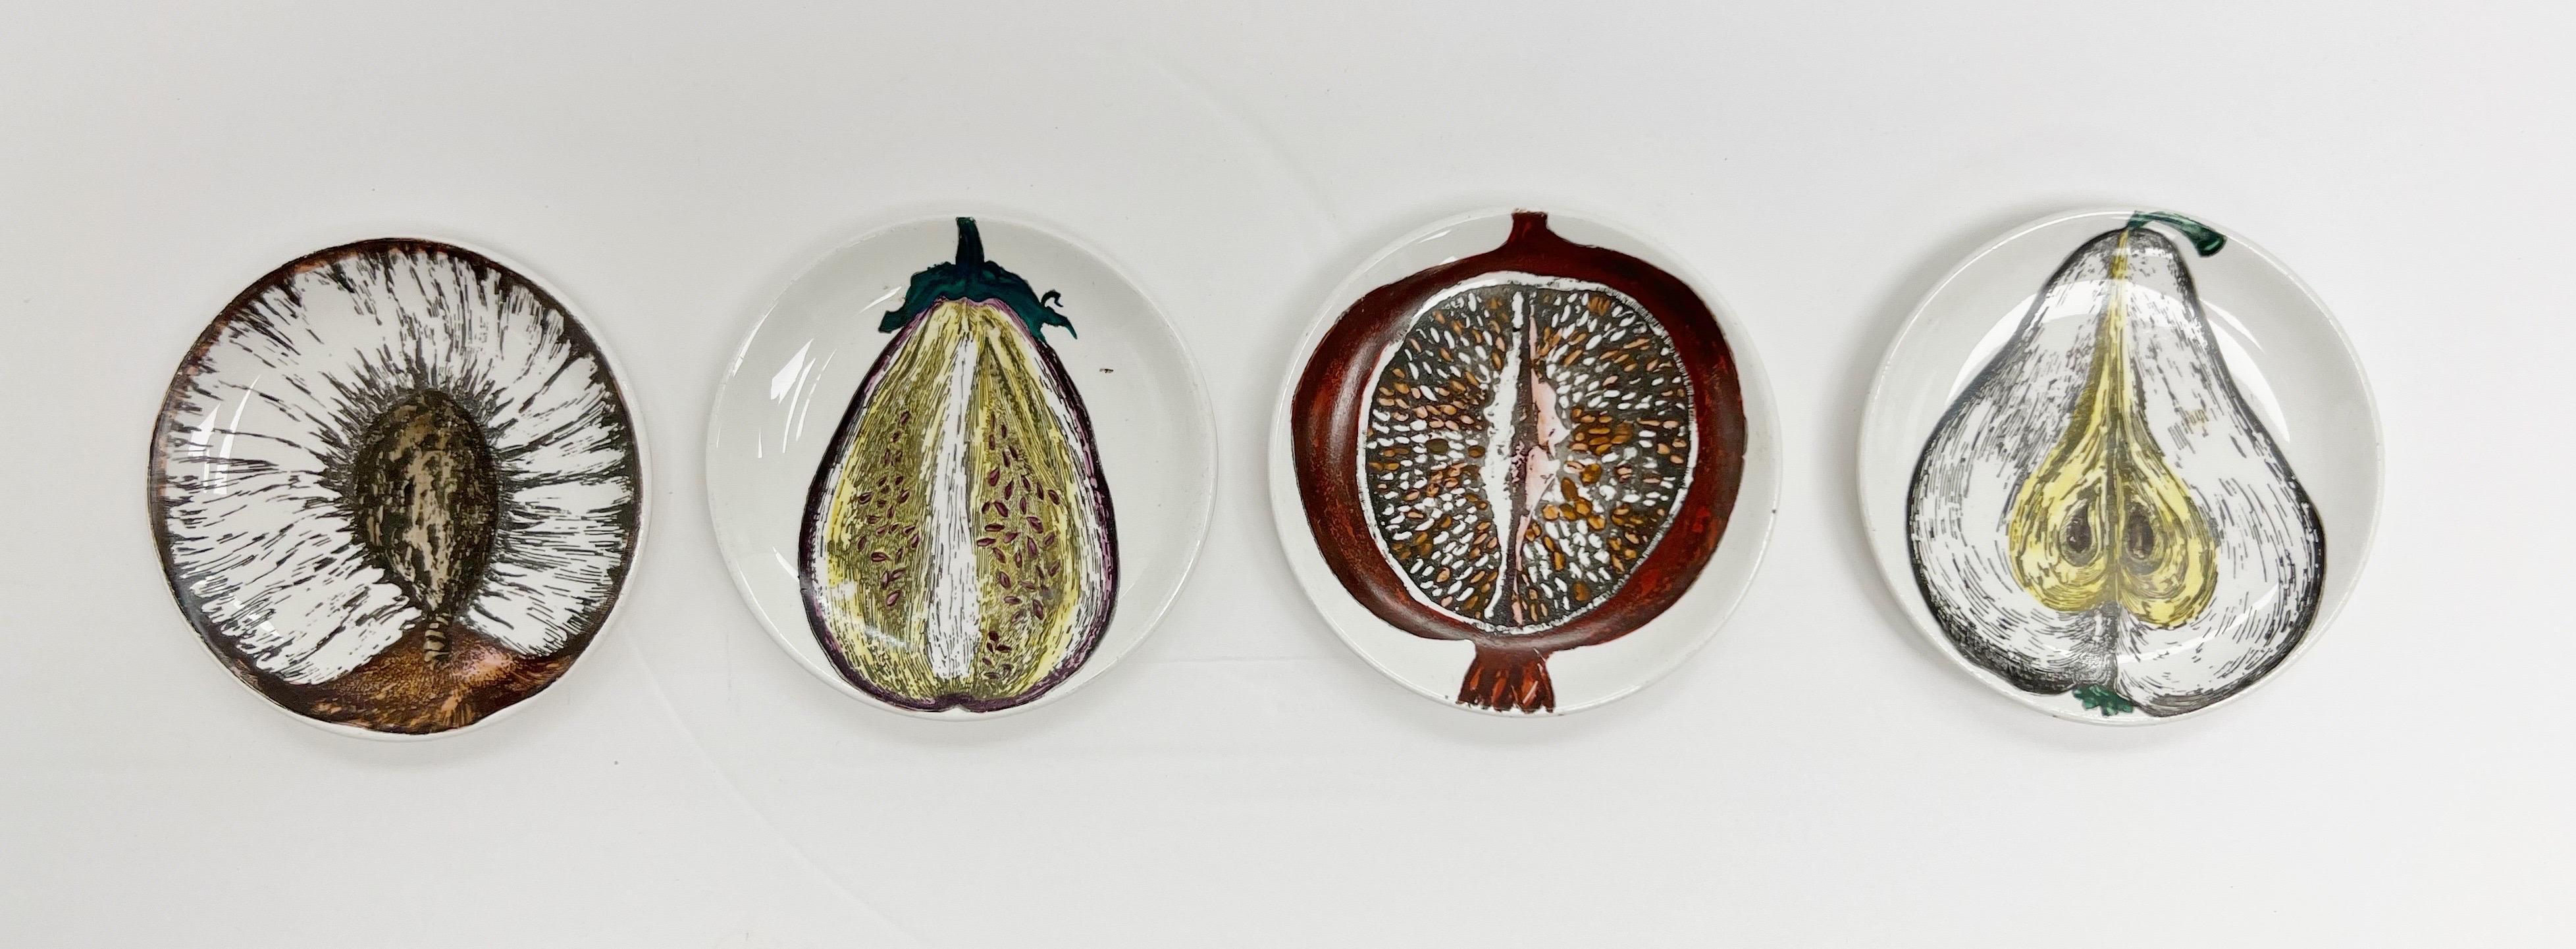 Piero Fornasetti set of Four Coasters Sezioni di Frutta Pattern 1